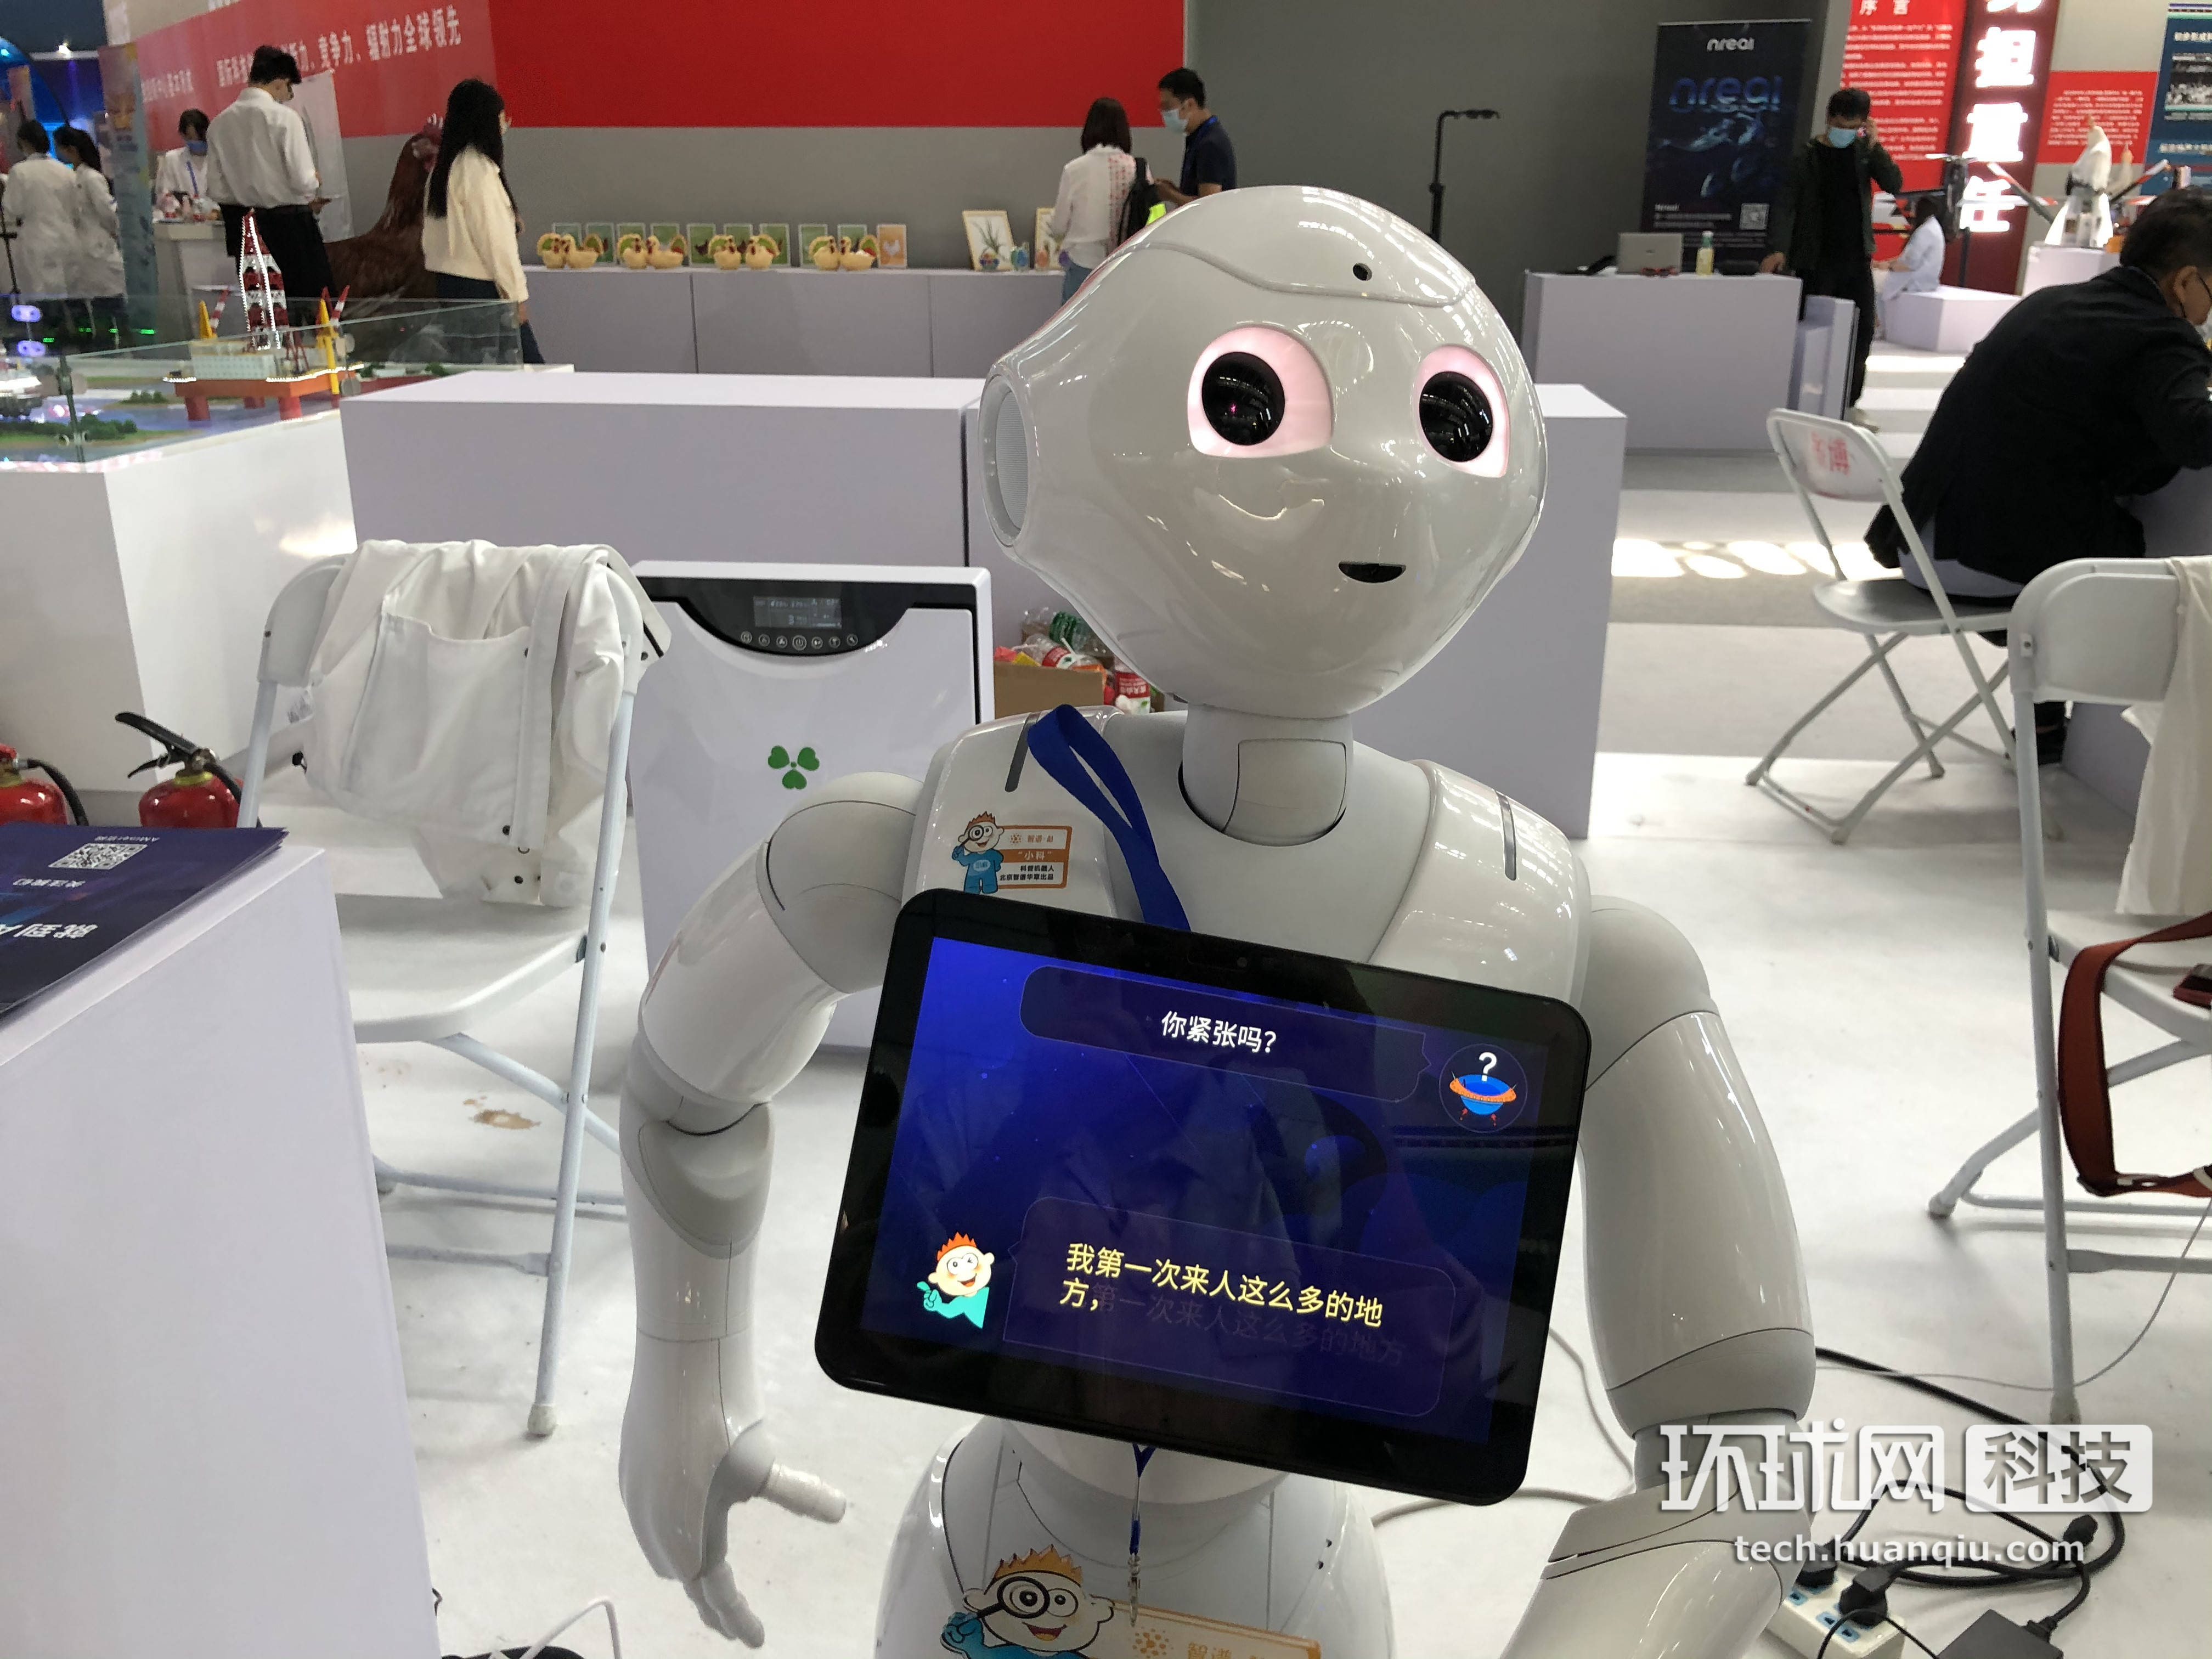 北京科技周的明星机器人小科:有一点幽默